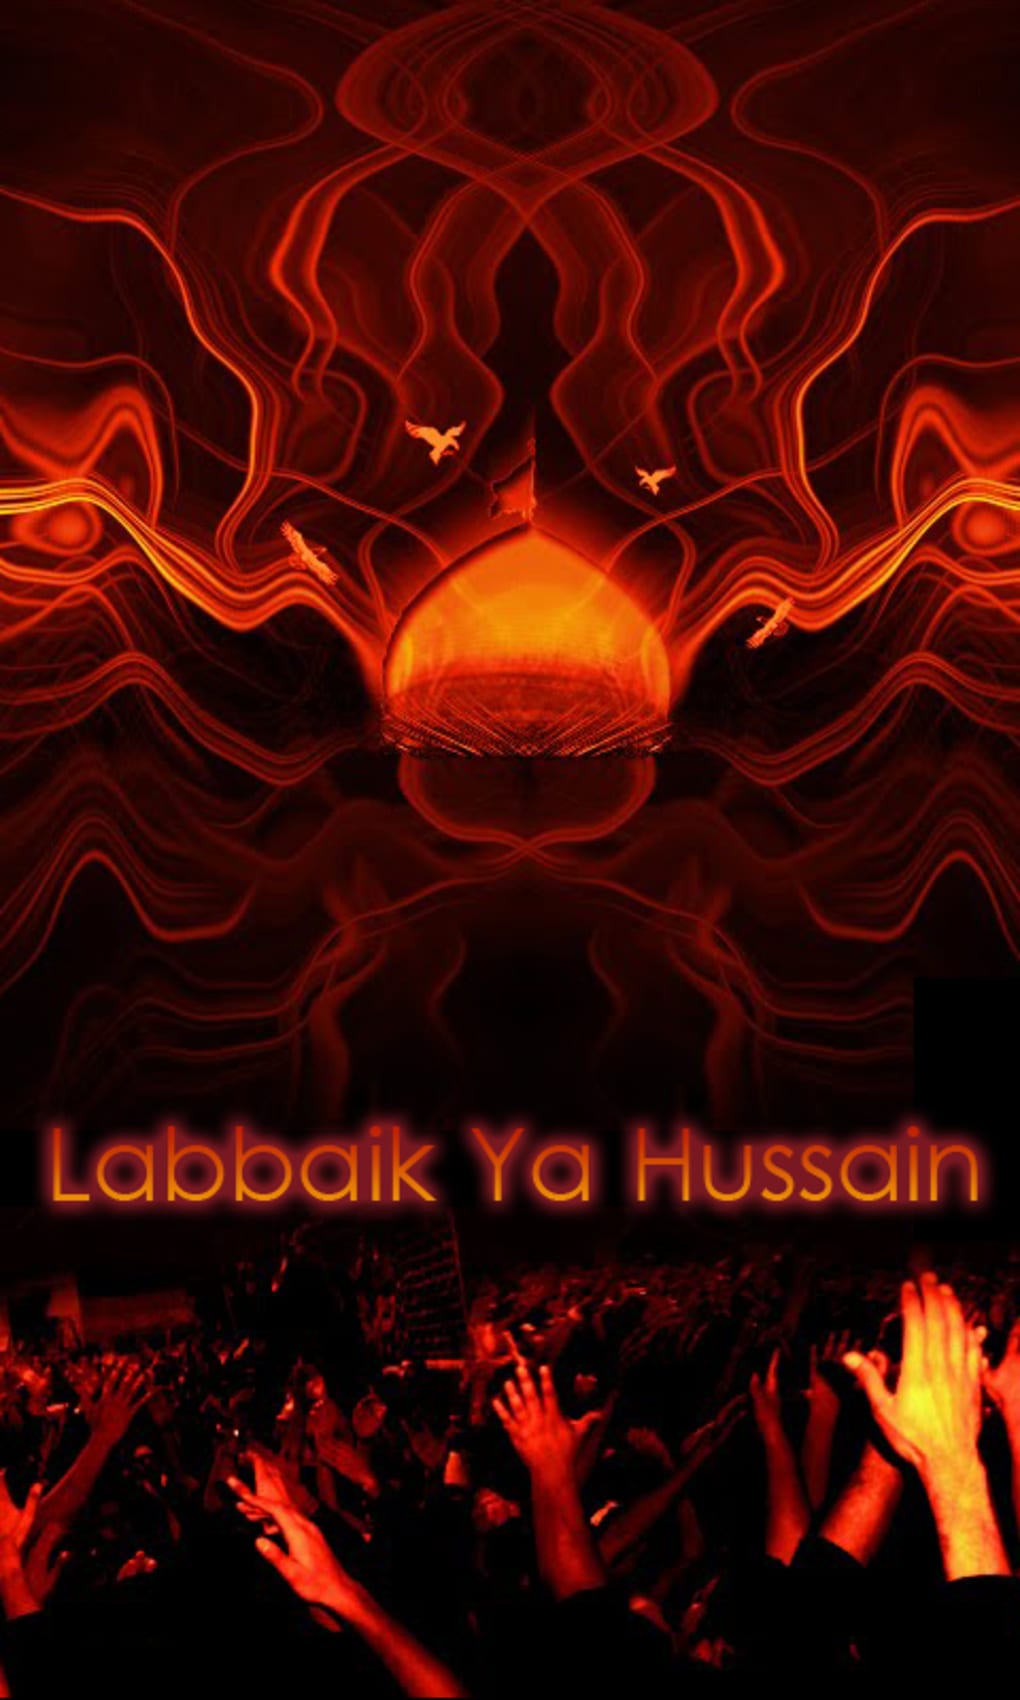 Labbaik'a Ya Hussain by Sasu-Sakuu on DeviantArt